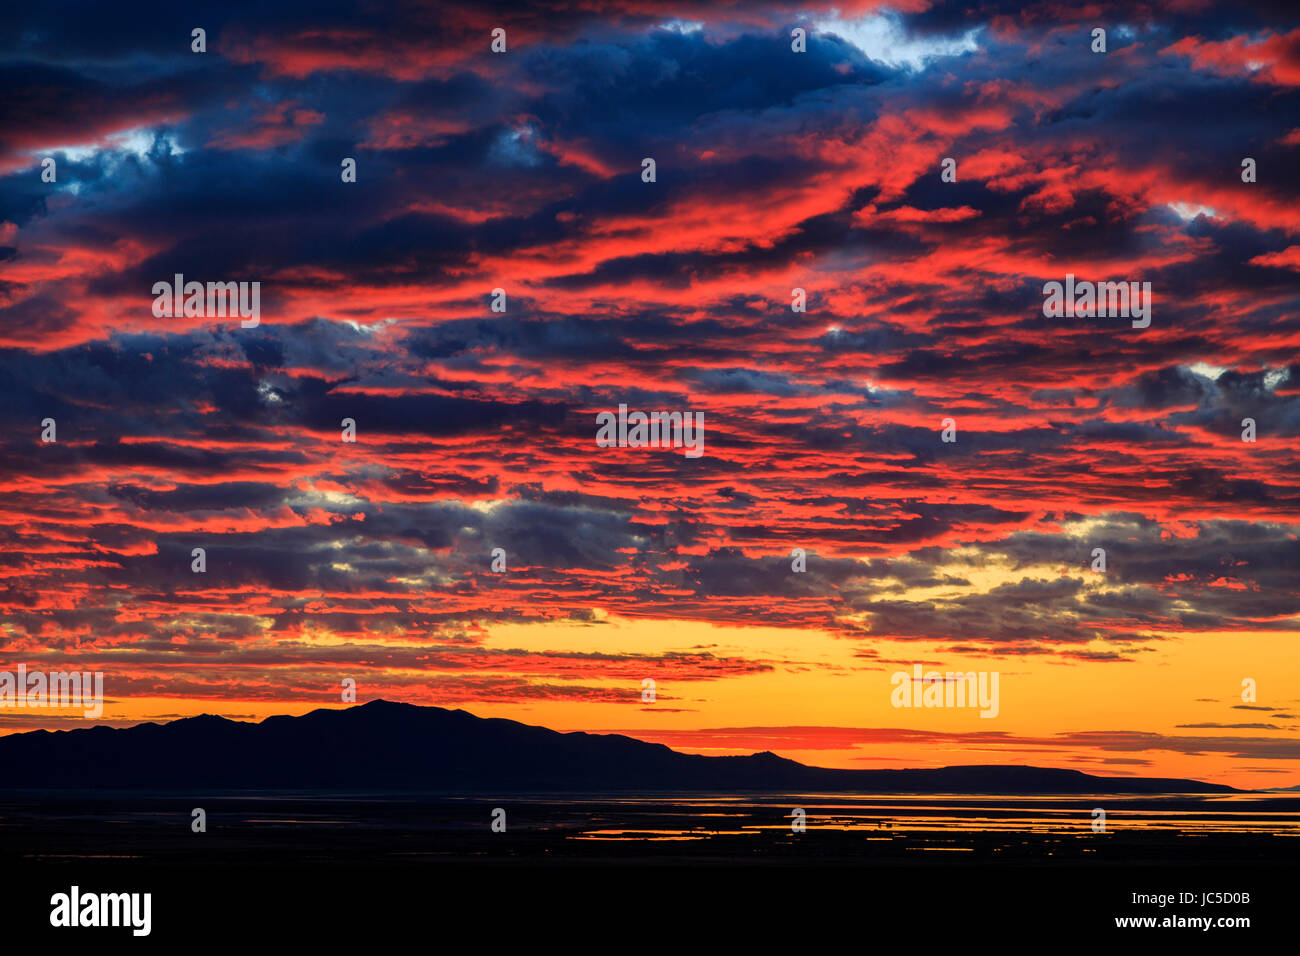 Das Abendrot des Sonnenuntergangs leuchtet auf der Unterseite der Wolken über Antelope Island.  Antelope Island ist die größte Insel im Great Salt Lake. Stockfoto